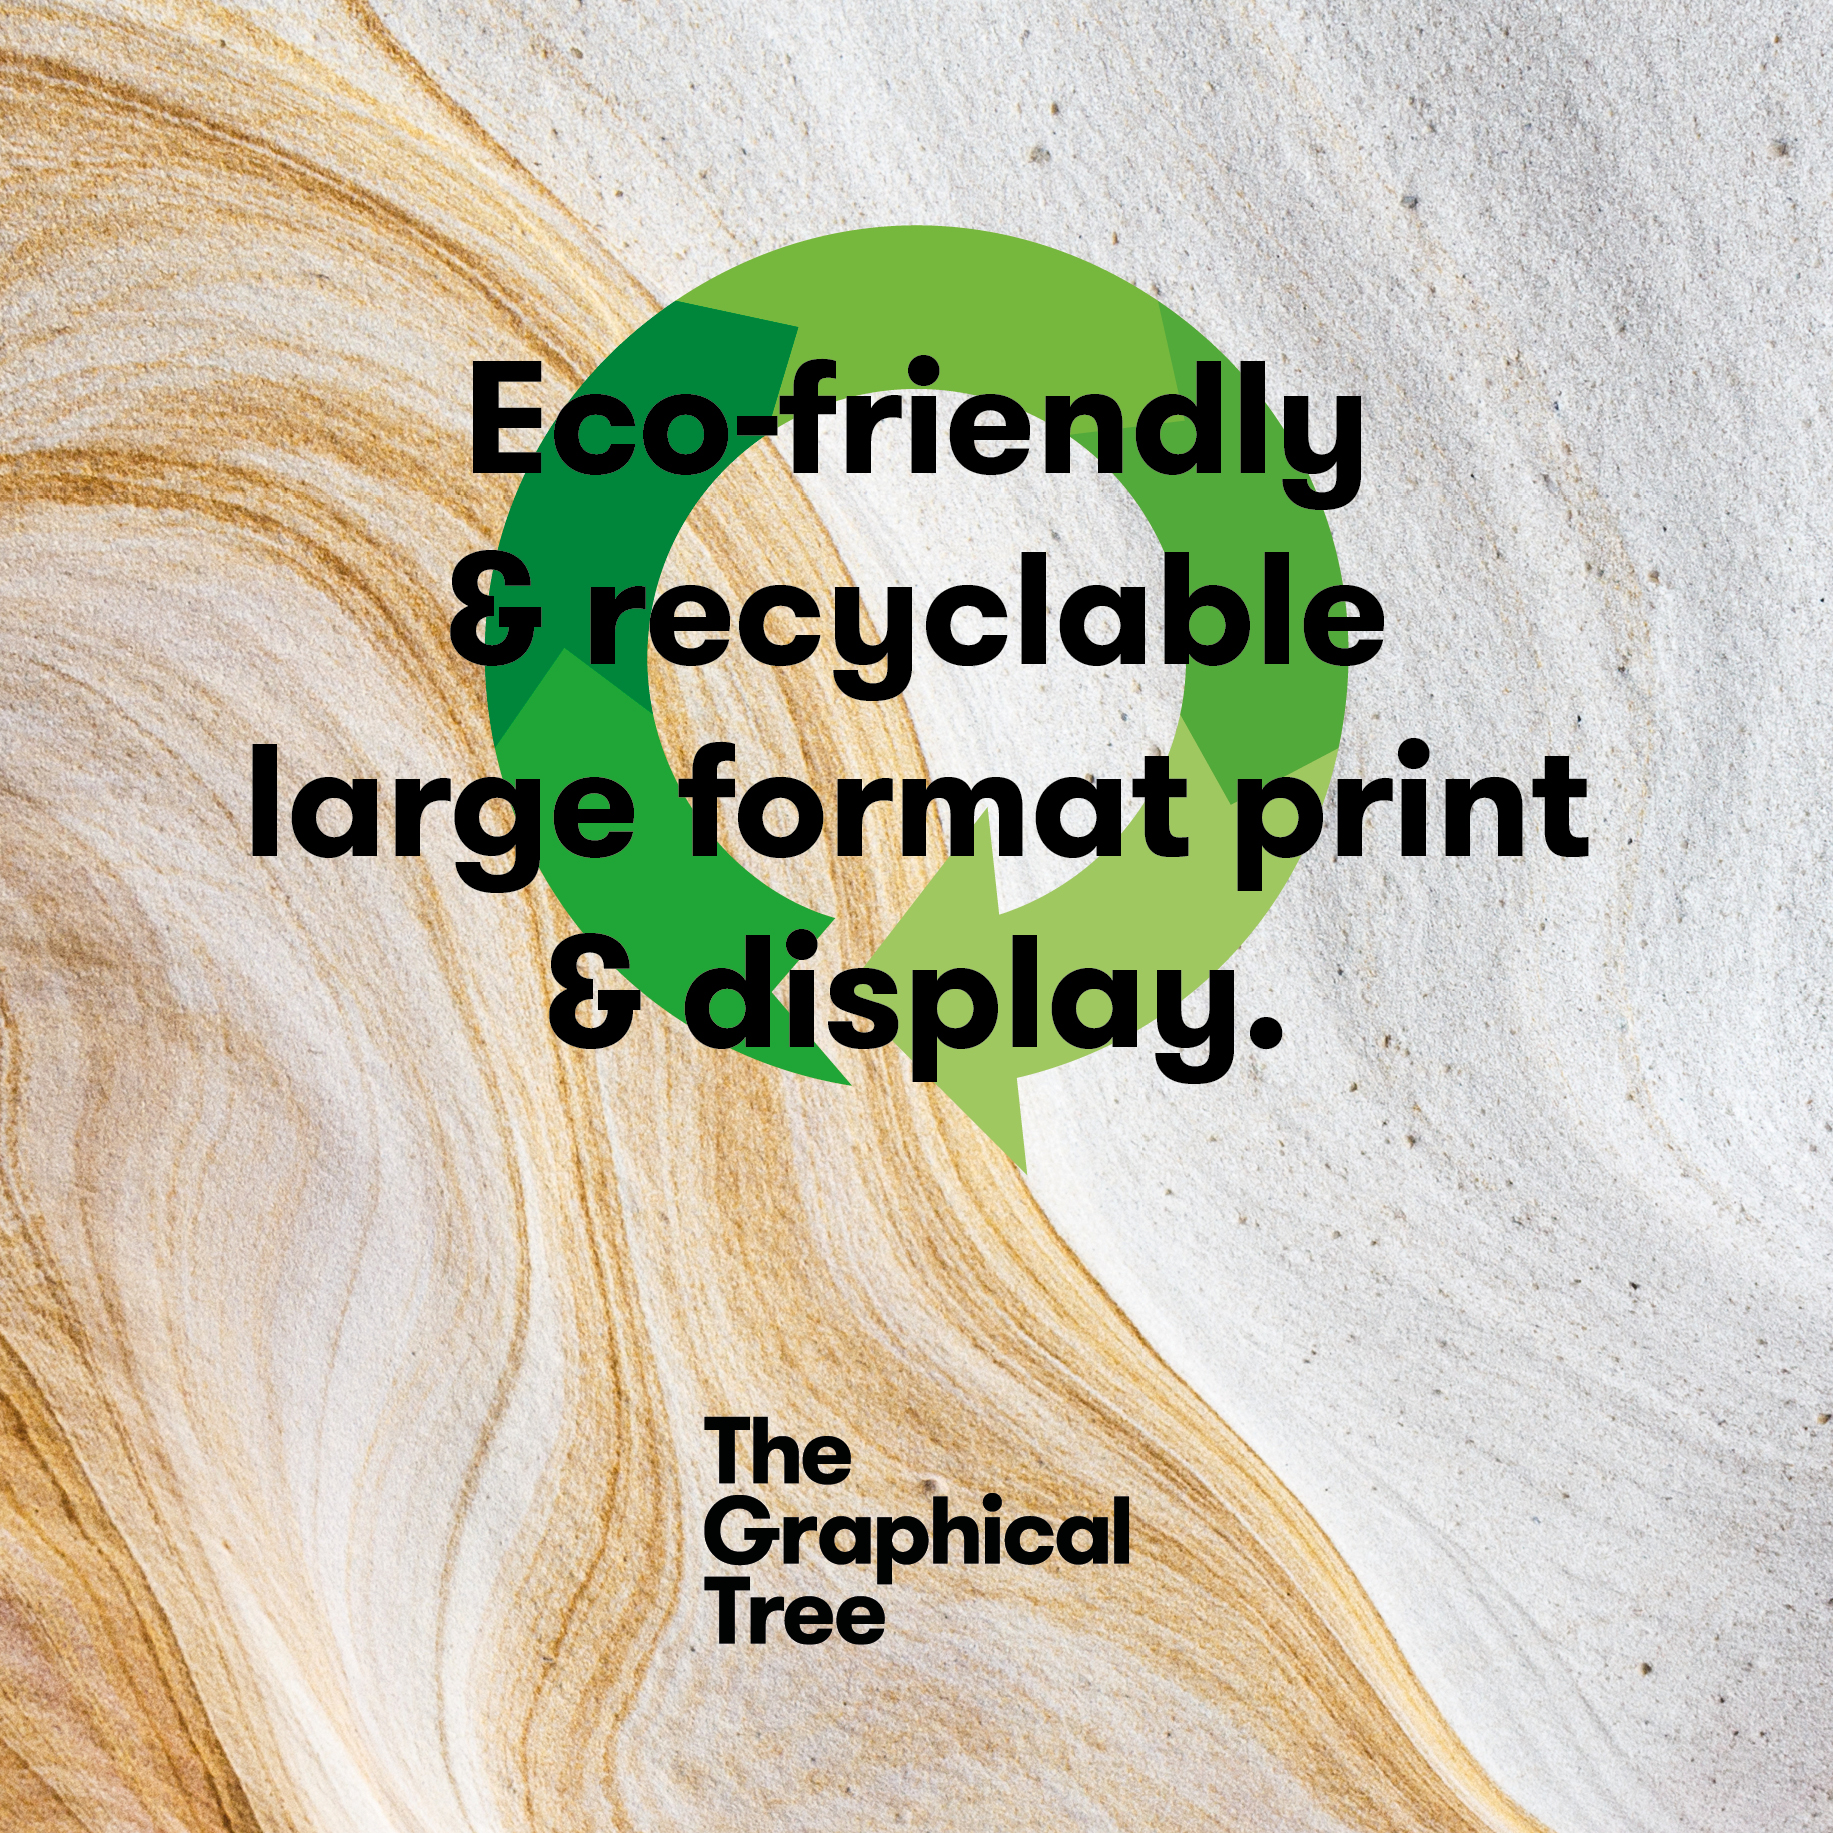 eco printing